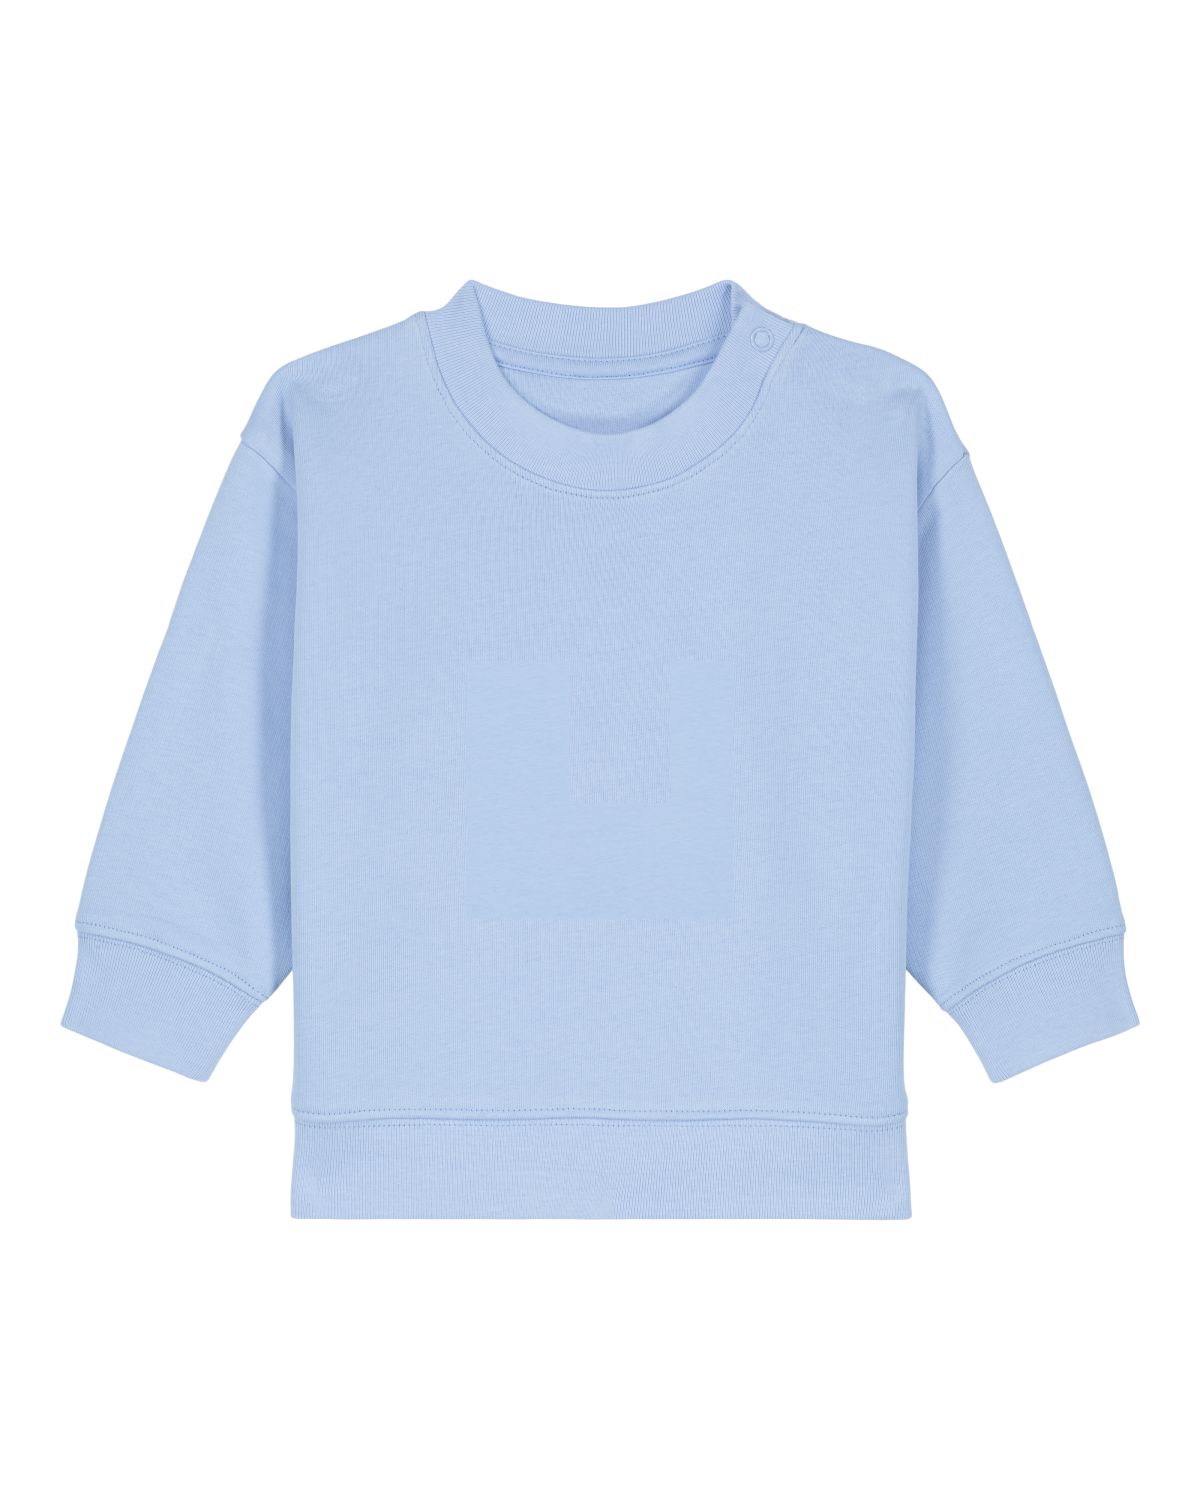 Langarm, Ärmel, T-shirt, Pullover, Sweatshirt